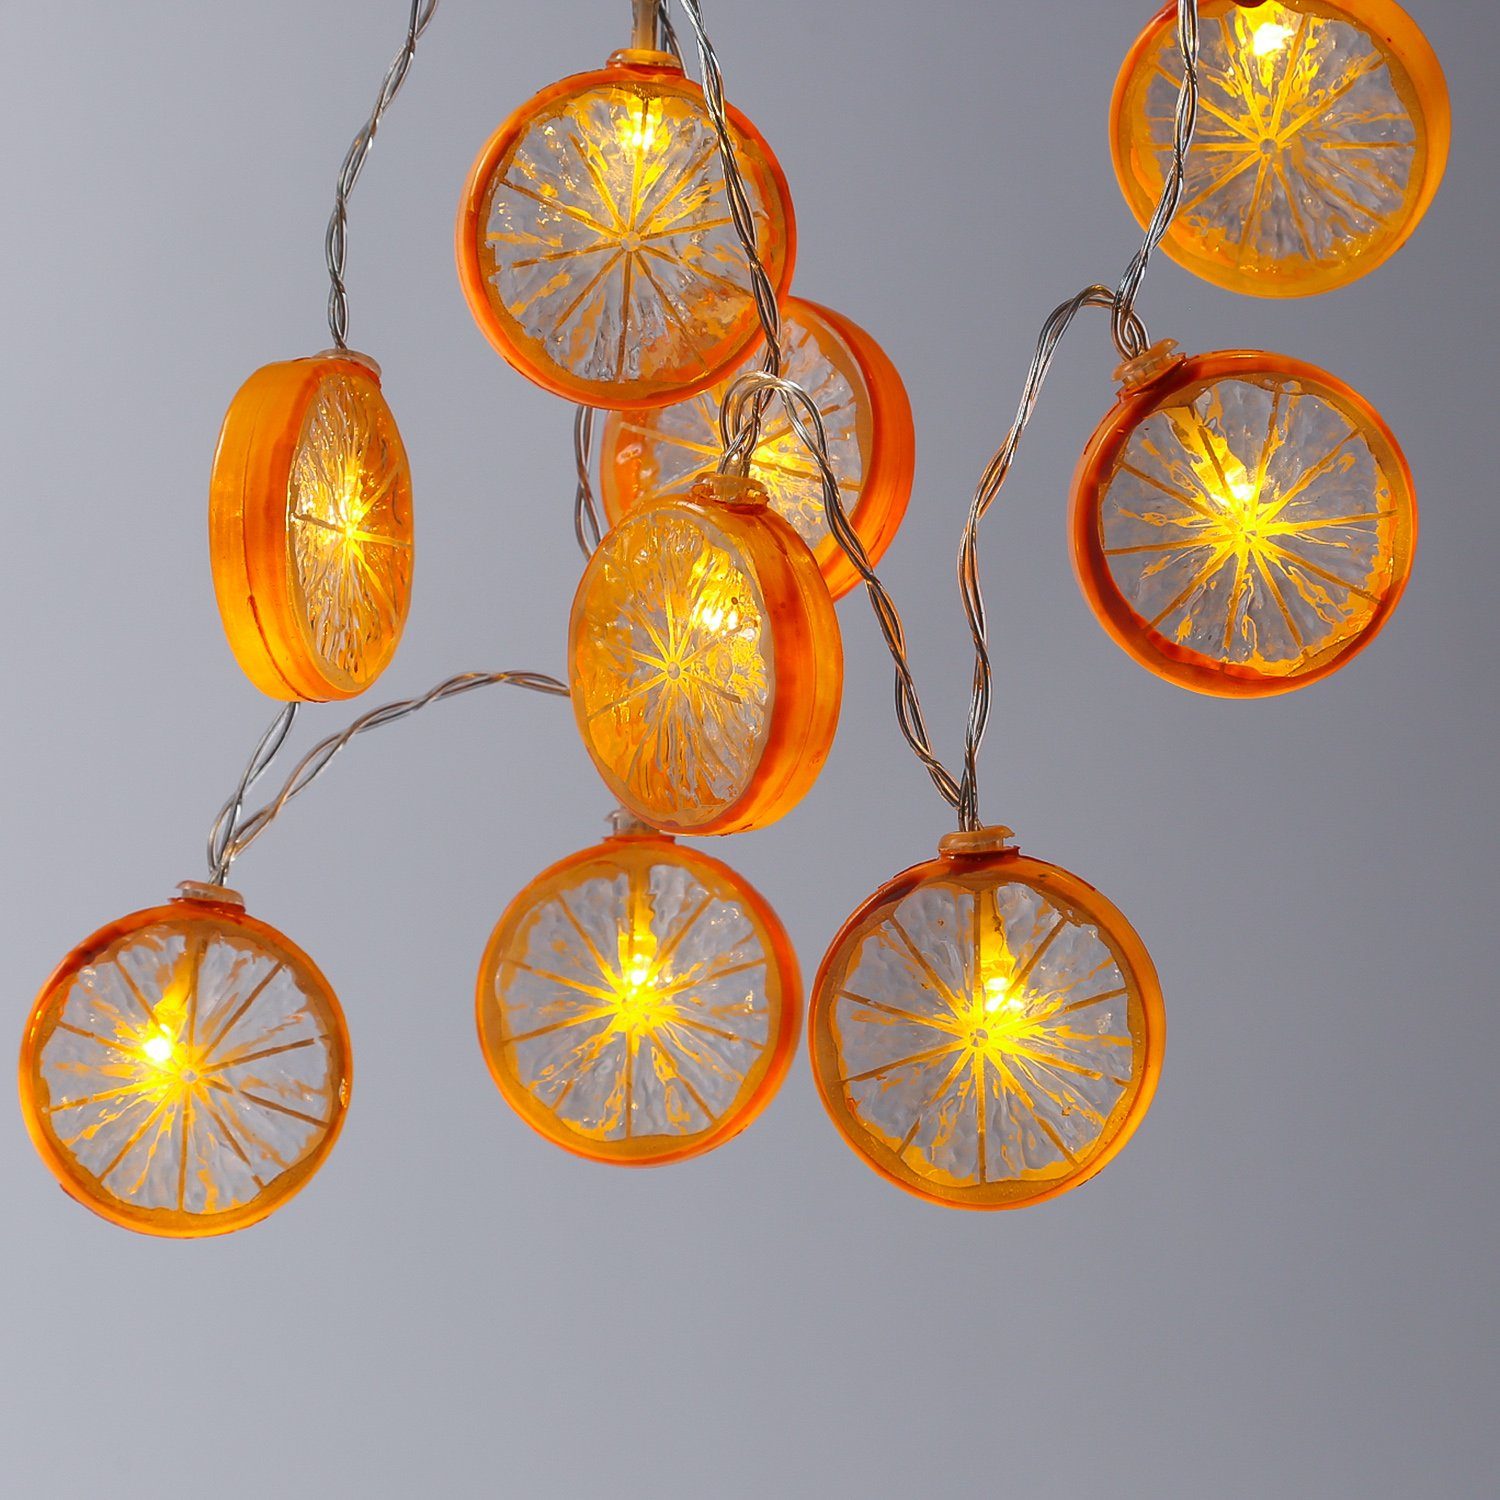 MARELIDA LED-Lichterkette »LED Lichterkette Orange 10 Orangenscheiben  warmweiße LED Batteriebetrieb orange«, 10-flammig online kaufen | OTTO